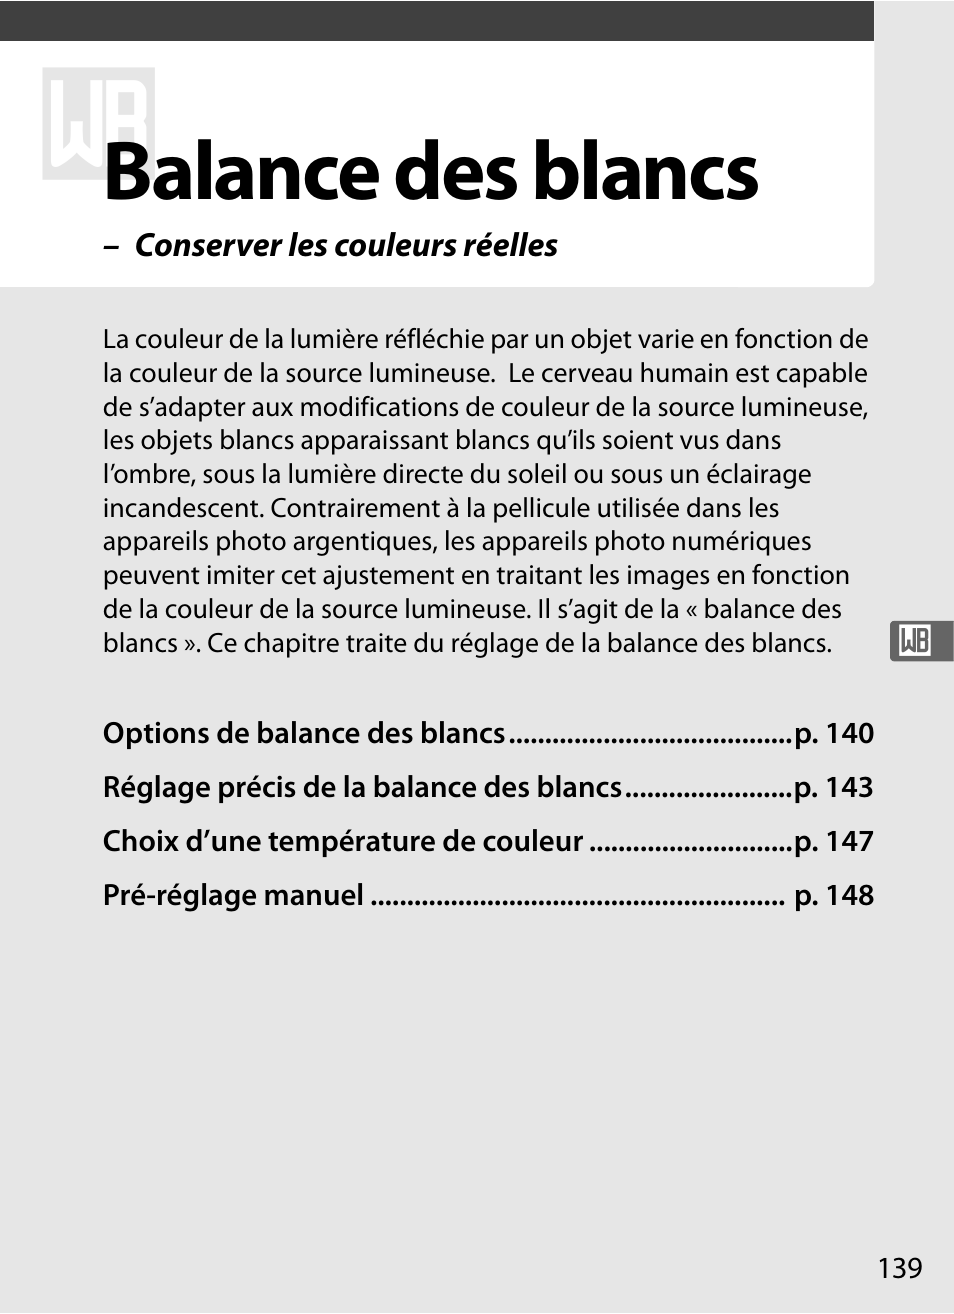 Balance des blancs | Nikon D700 Manuel d'utilisation | Page 165 / 472